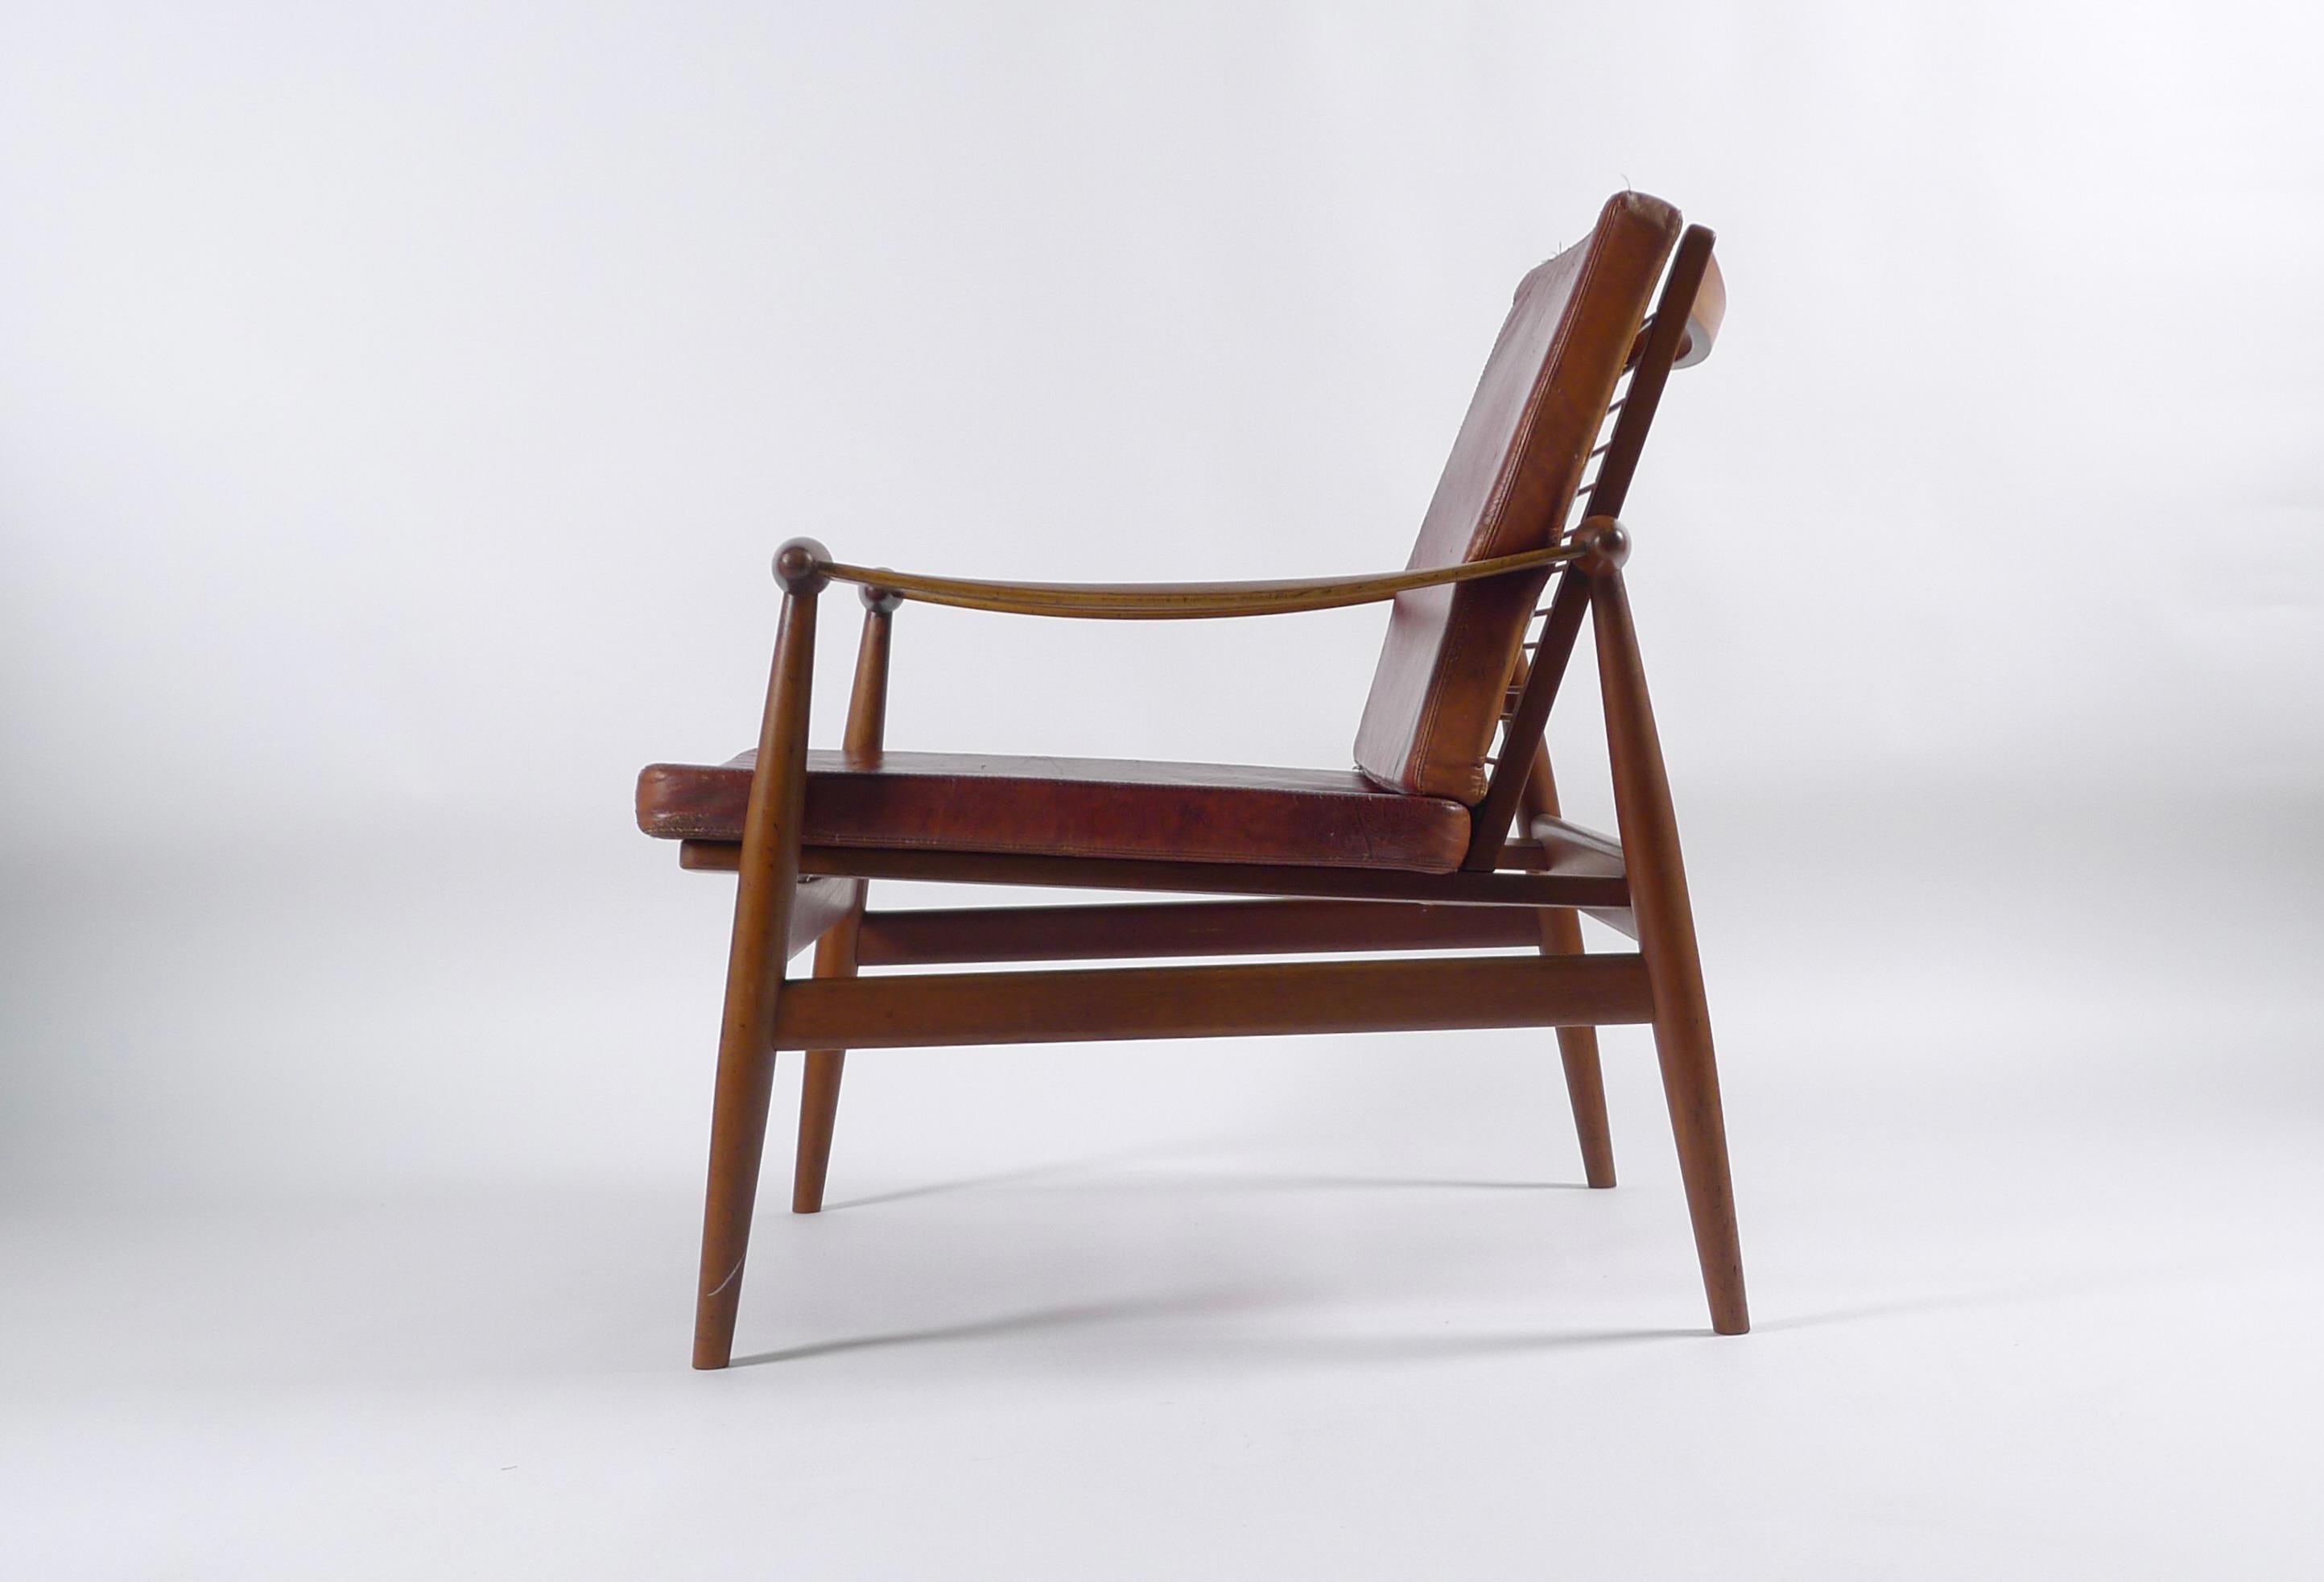 Scandinavian Modern Finn Juhl Spade Chair, Model Fd133, 1950s, Produced by France & Son, with Label